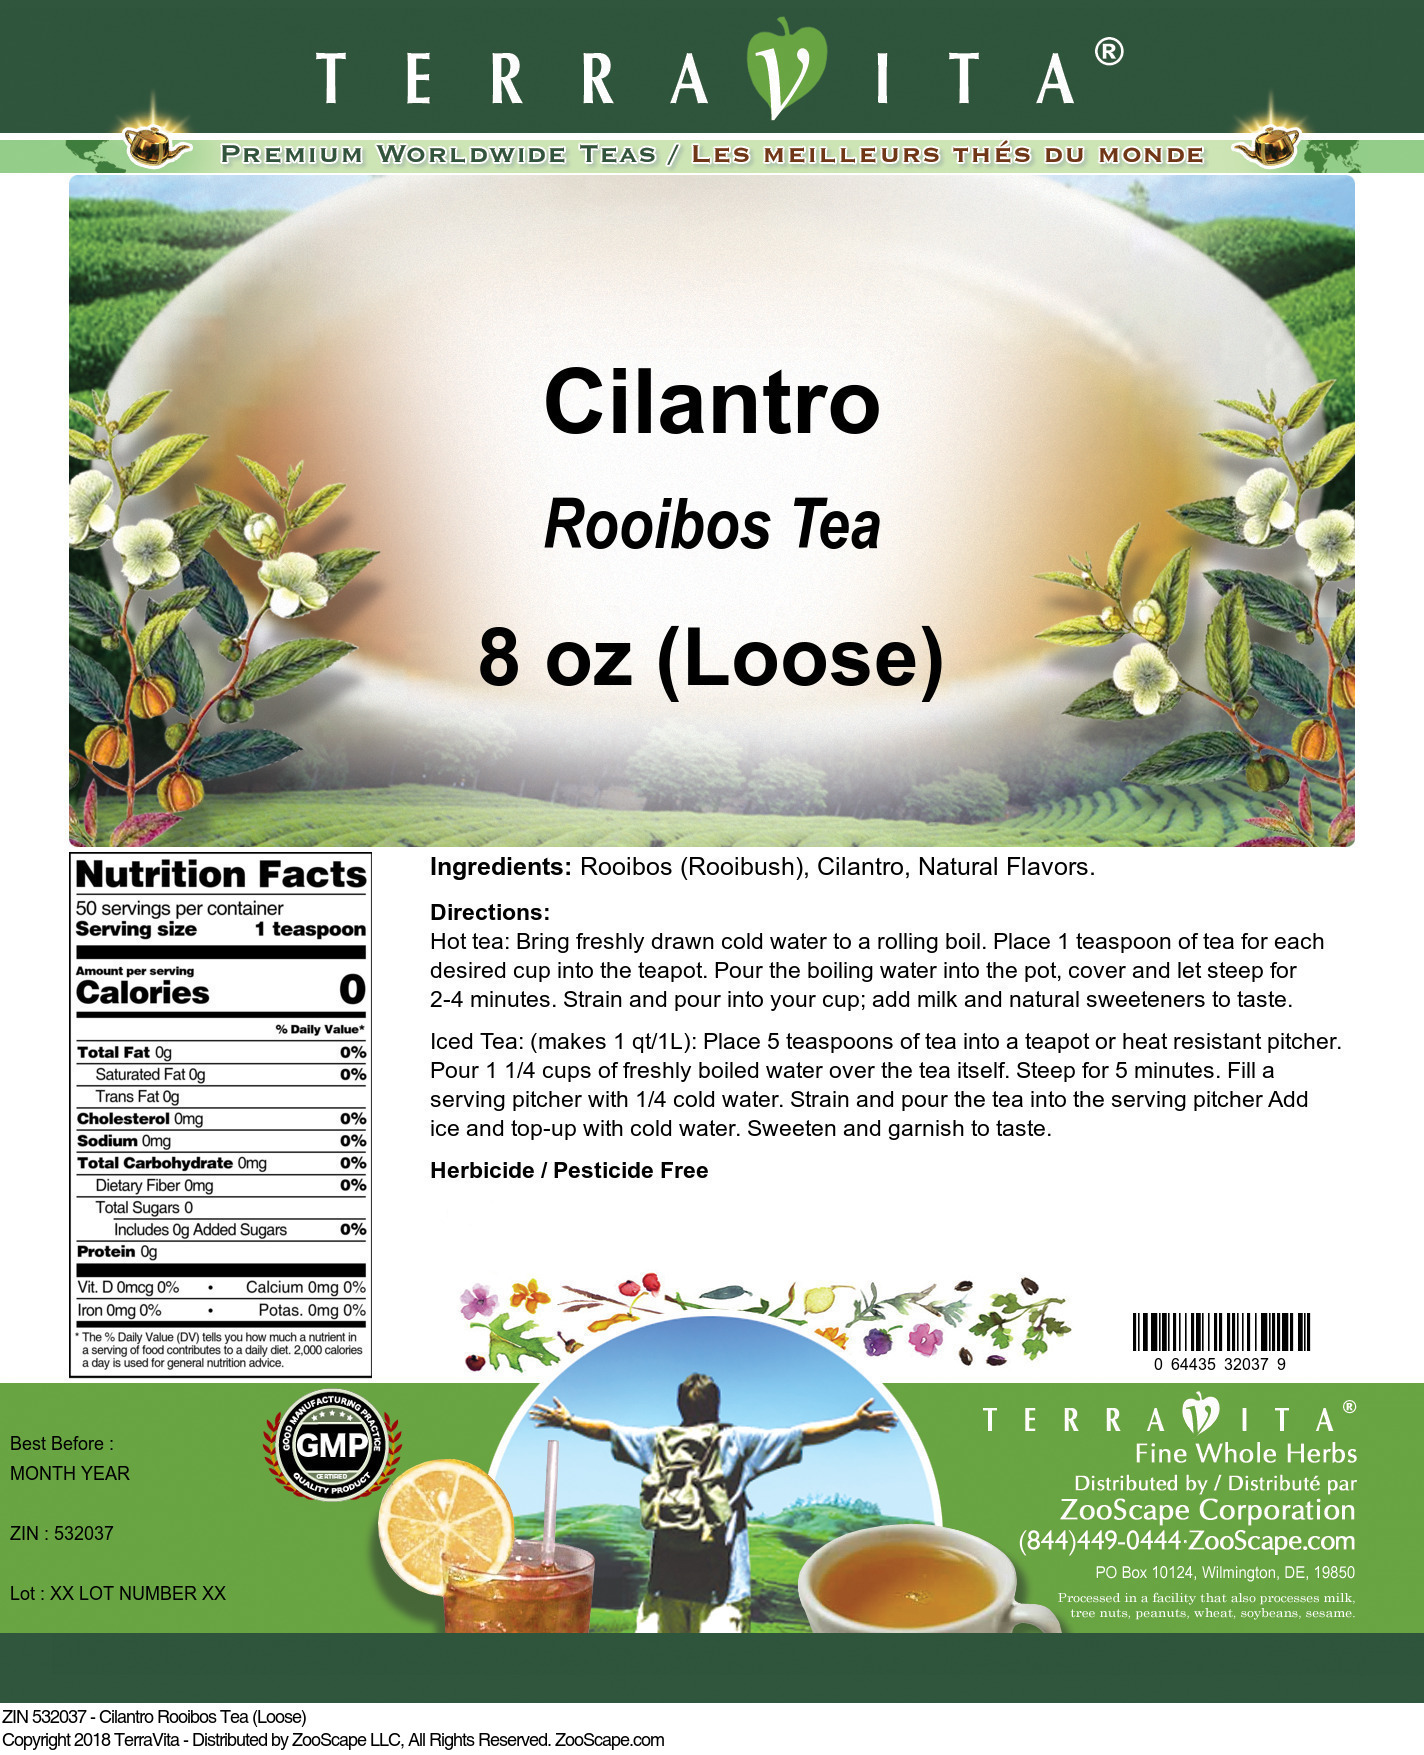 Cilantro Rooibos Tea (Loose) - Label